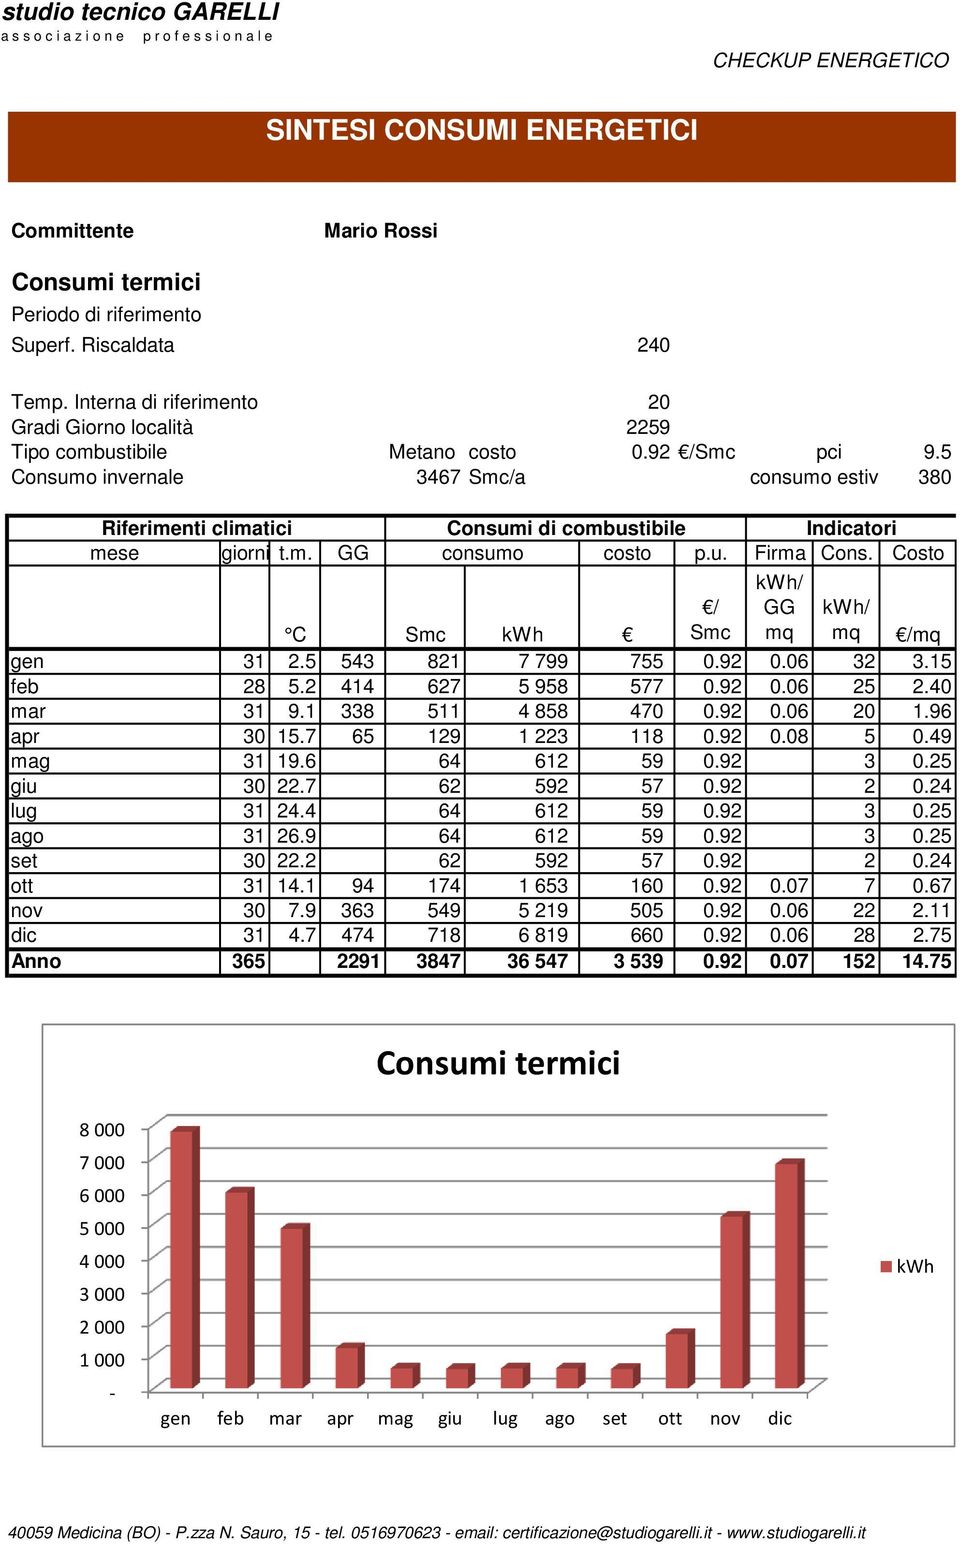 5 Consumo invernale 3467 Smc/a consumo estivo 38 Riferimenti climatici Consumi di combustibile Indicatori mese giorni t.m. GG consumo costo p.u. Firma Cons. Costo / Smc C Smc kwh /mq gen 31 2.